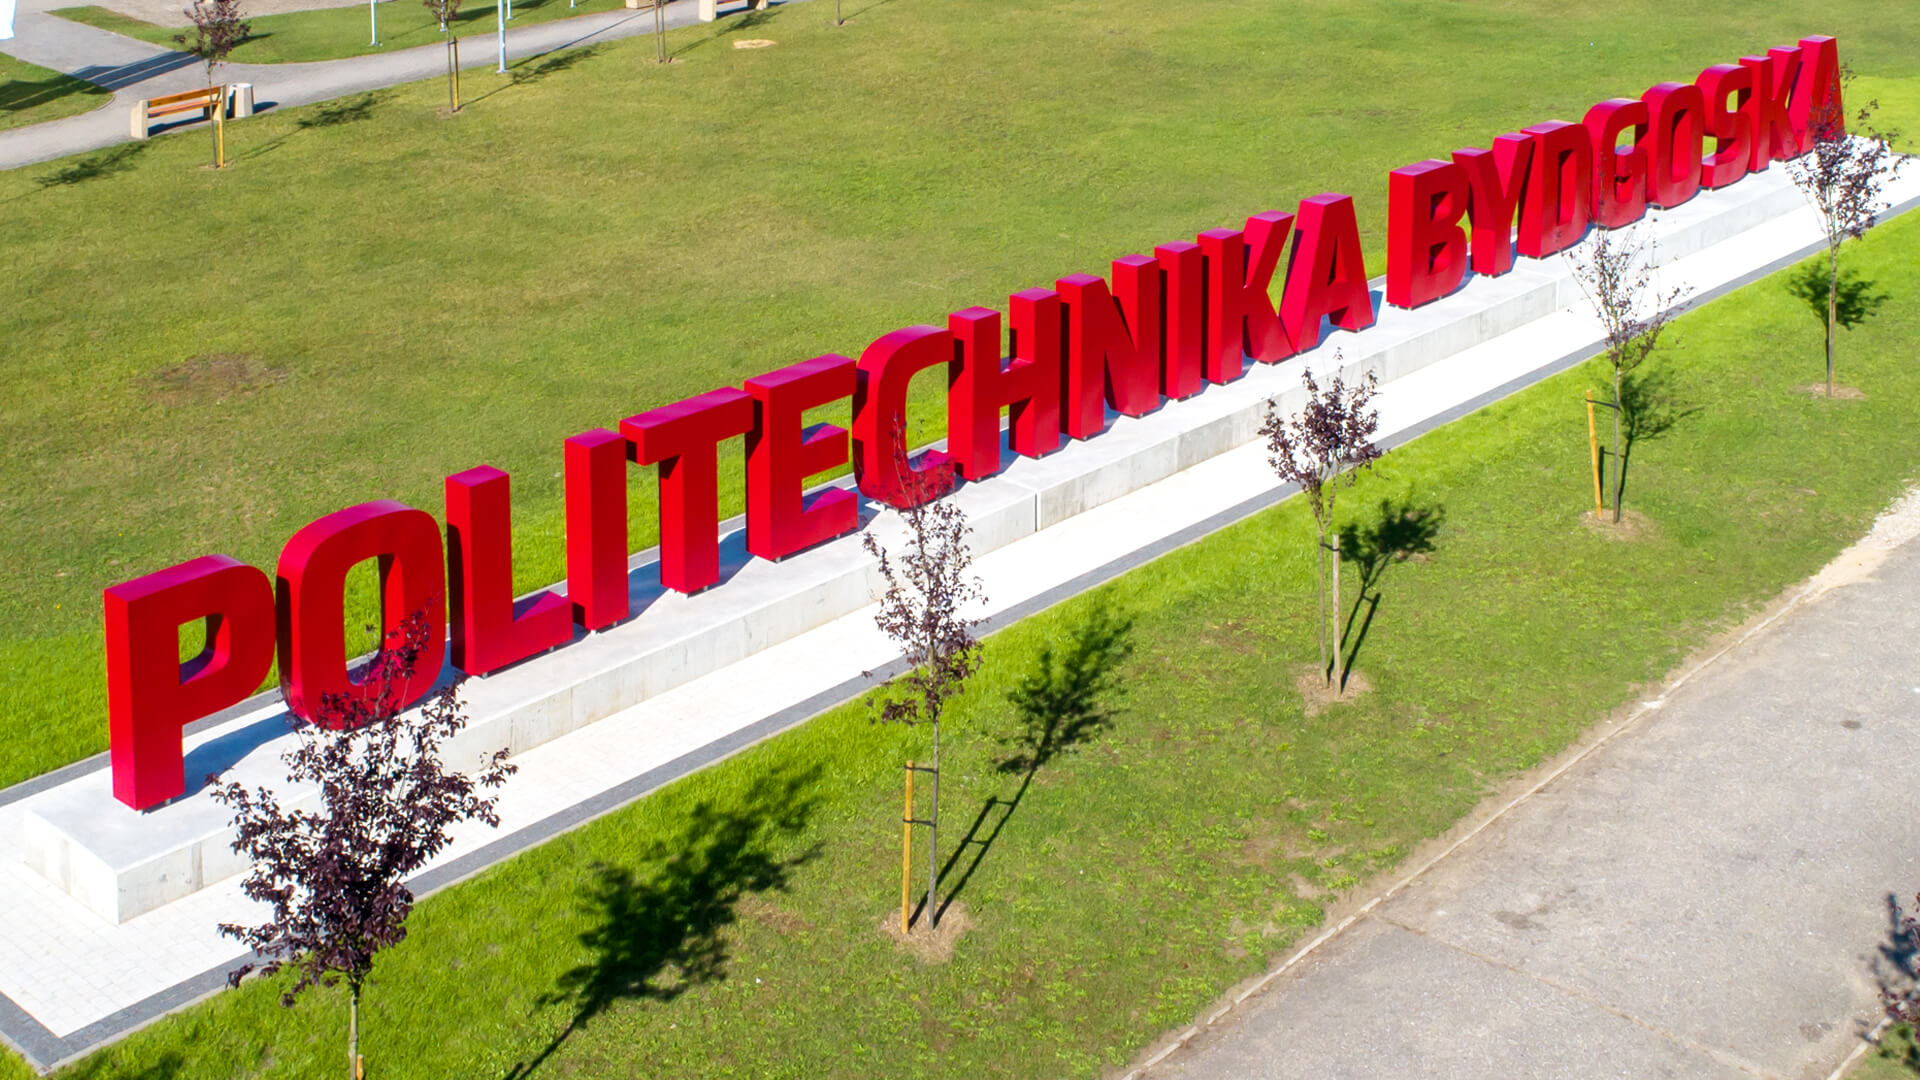 Università di tecnologia di Bydgoszcz - università politecnica di Bydgoszcz lettere di grande formato in nero